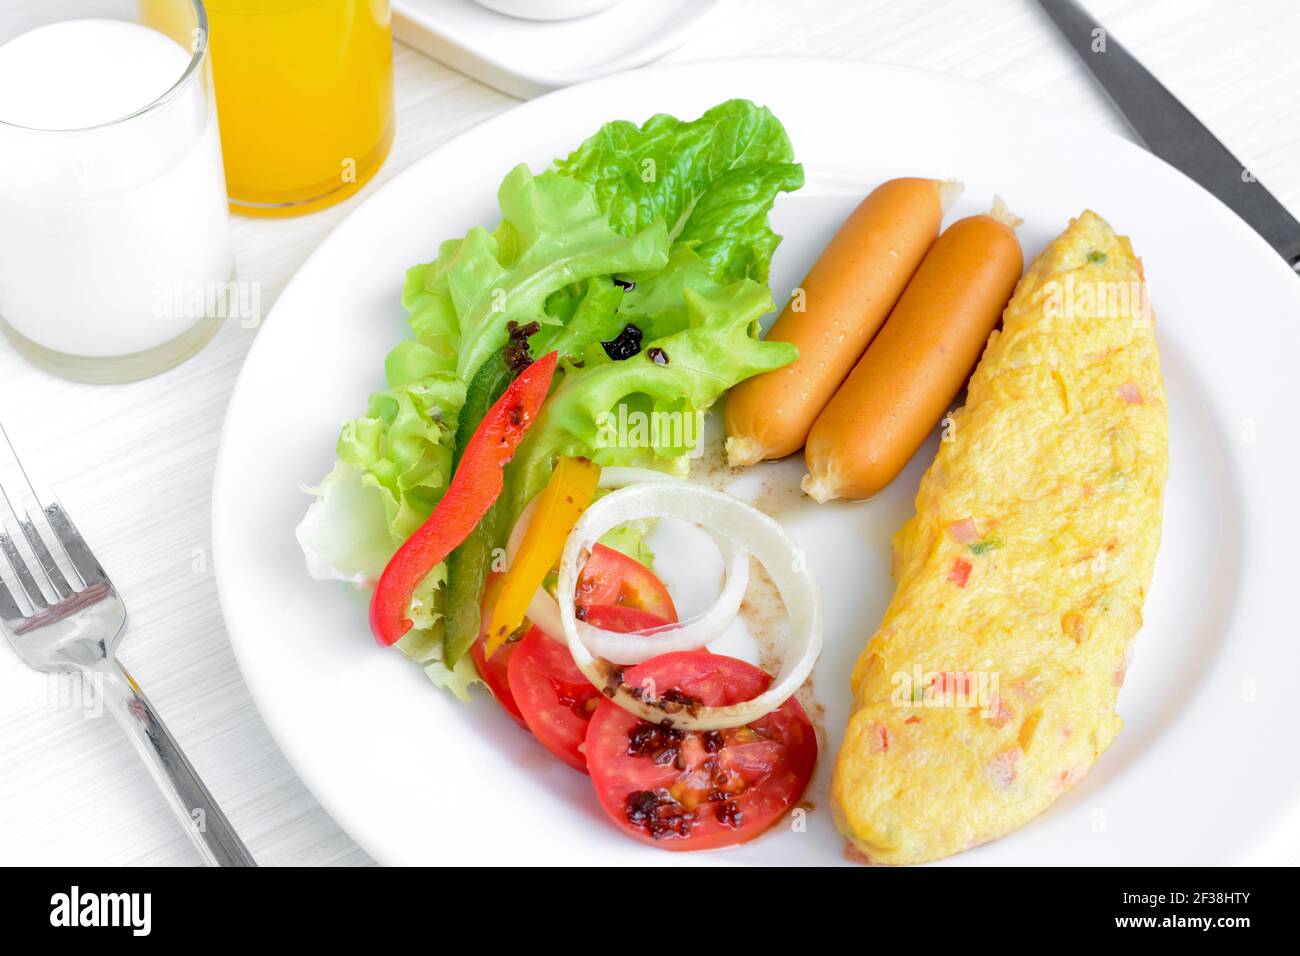 La colazione include omelette, salsiccia, latte, succo di frutta e insalata colorata con condimento italiano Foto Stock